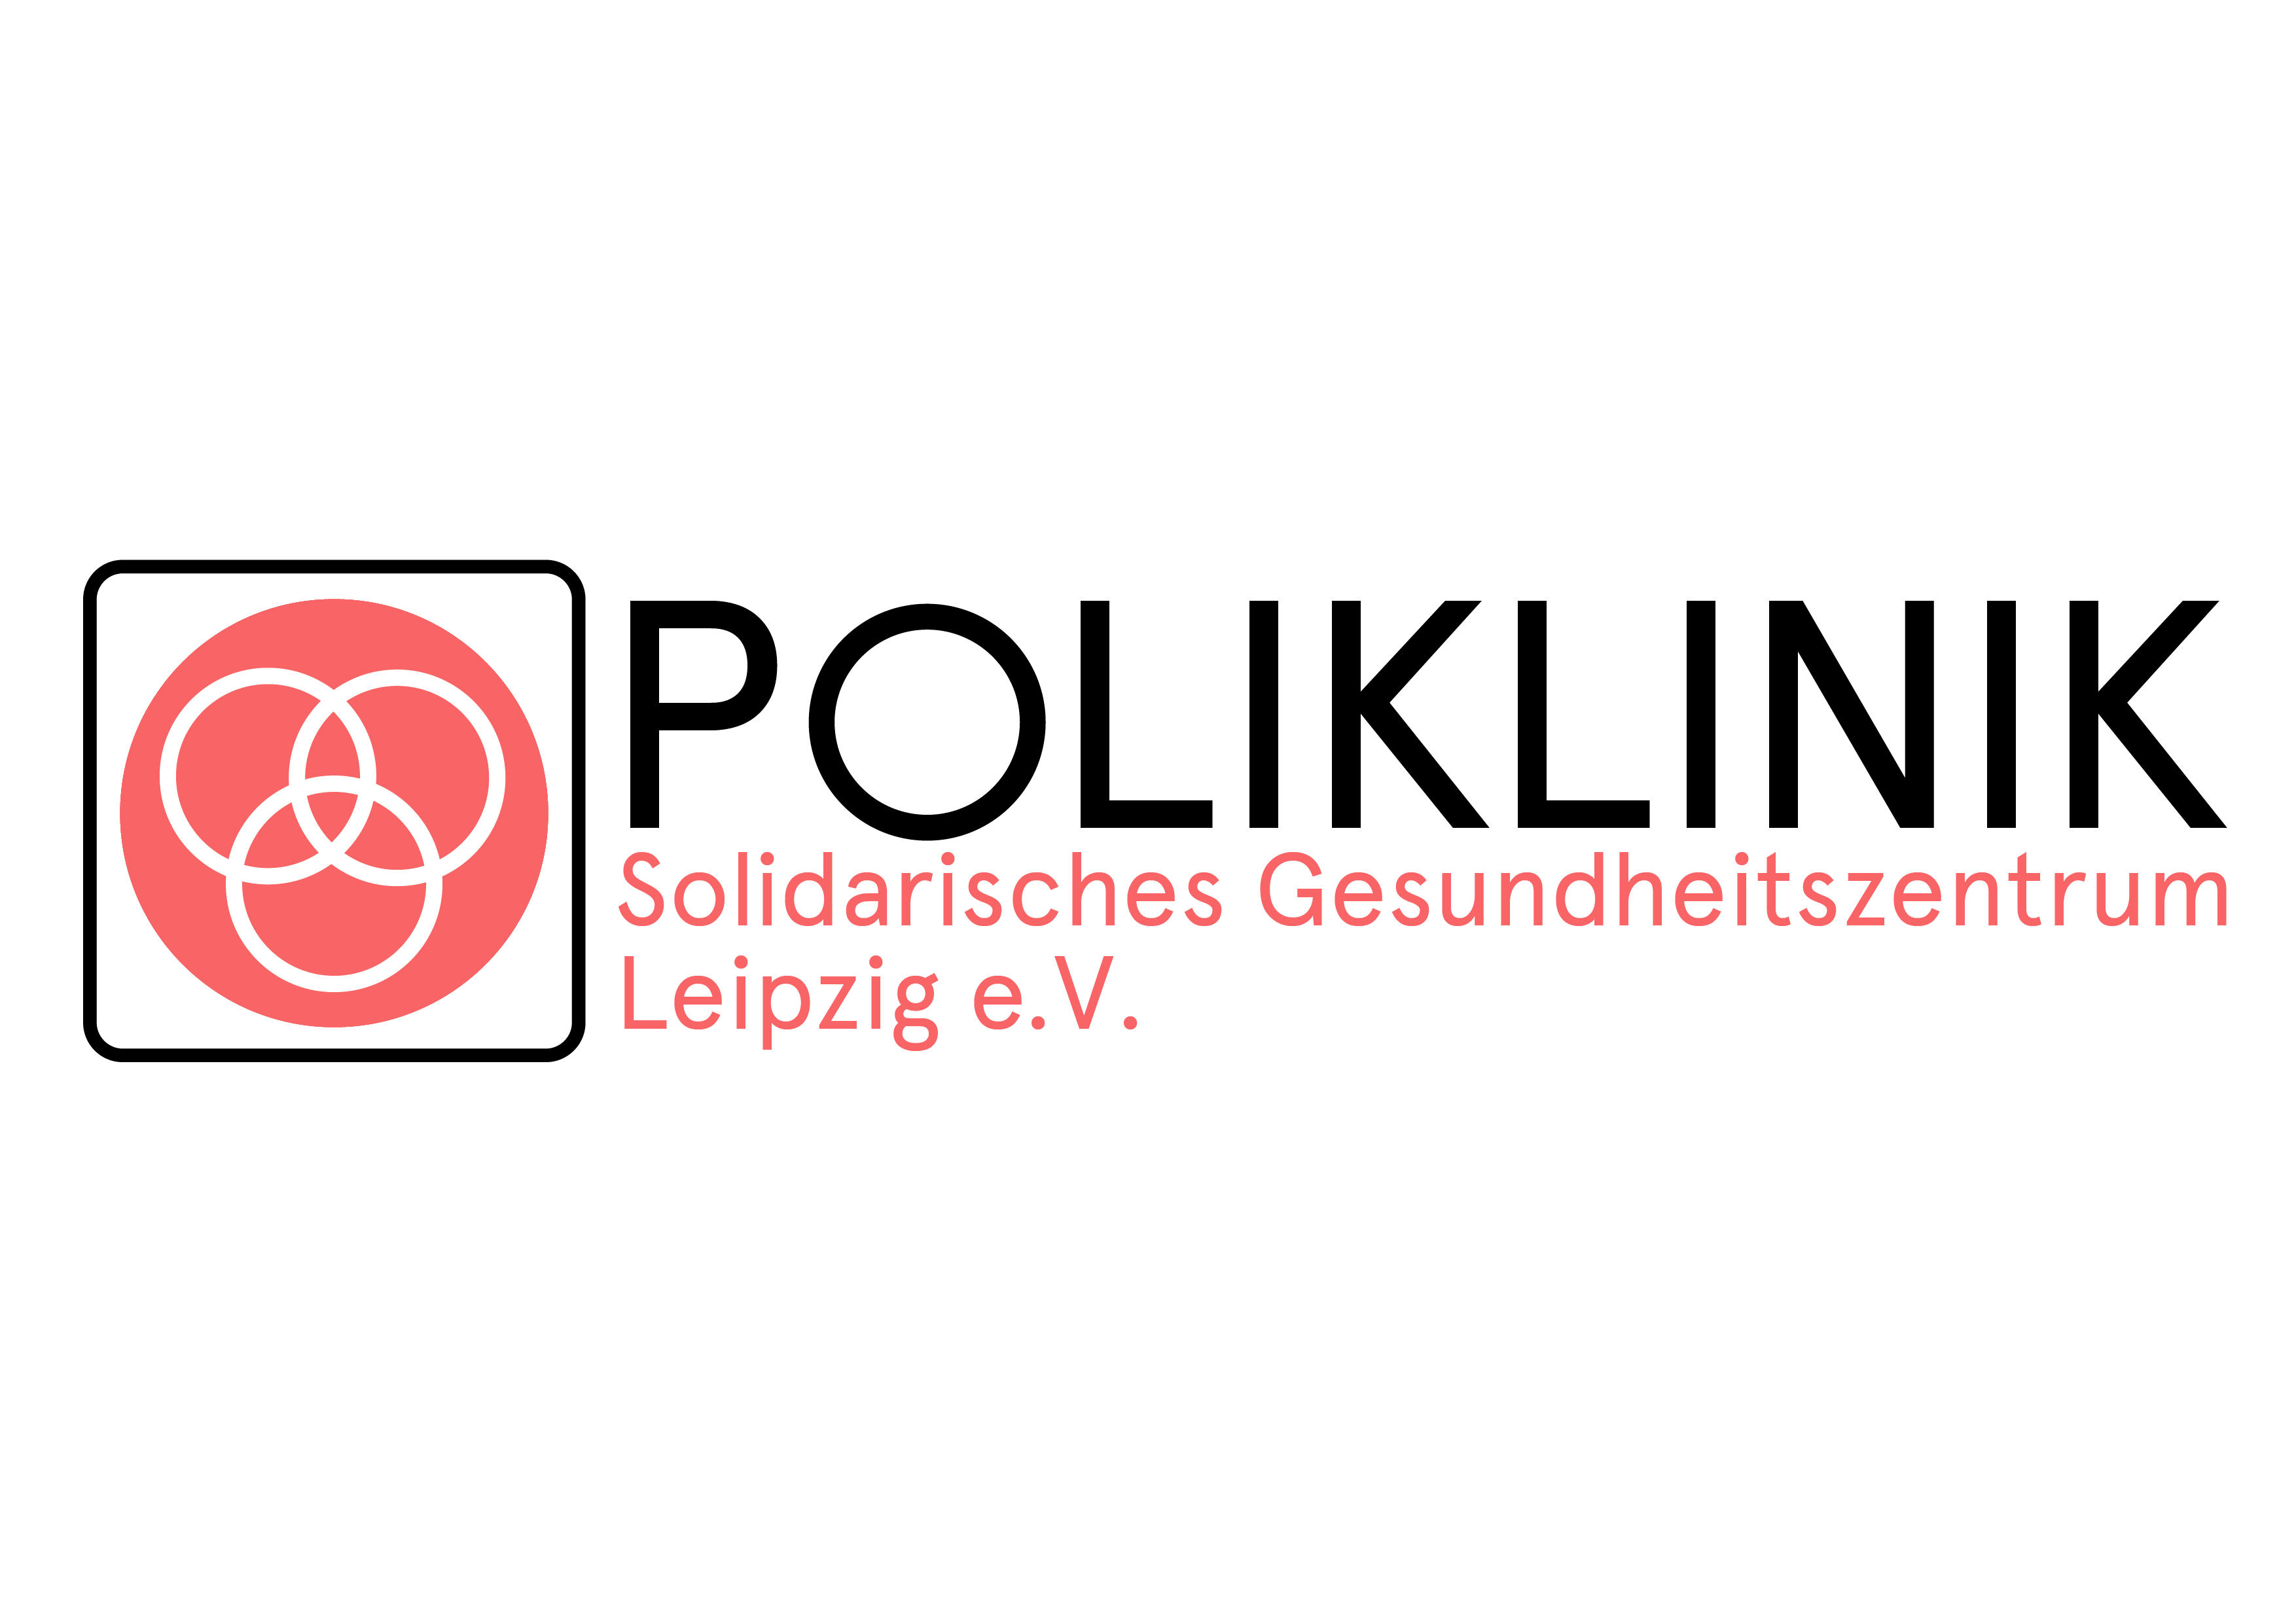 Poliklinik – Solidarisches Gesundheitszentrum Leipzig